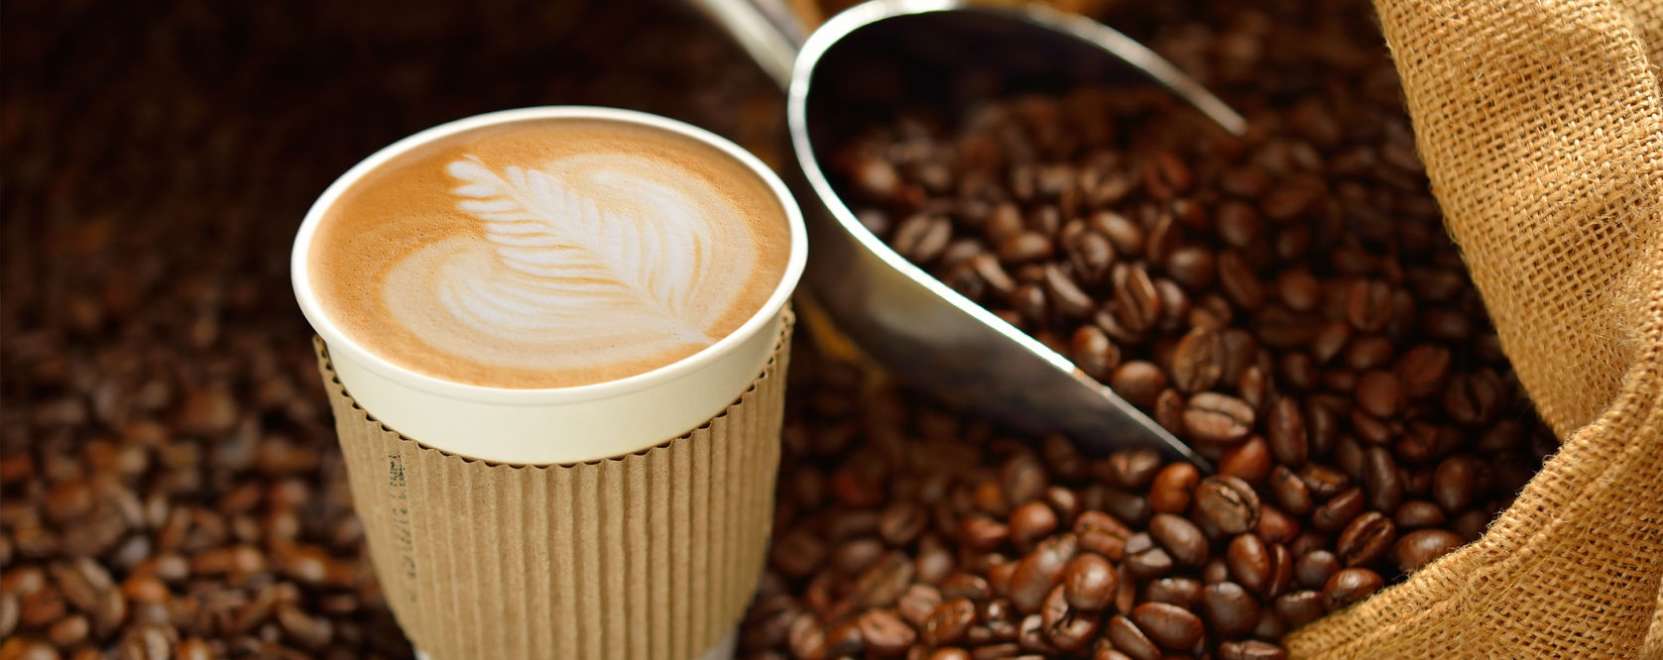 IoT és fair trade: így jut el a kávé a fogyasztóig 